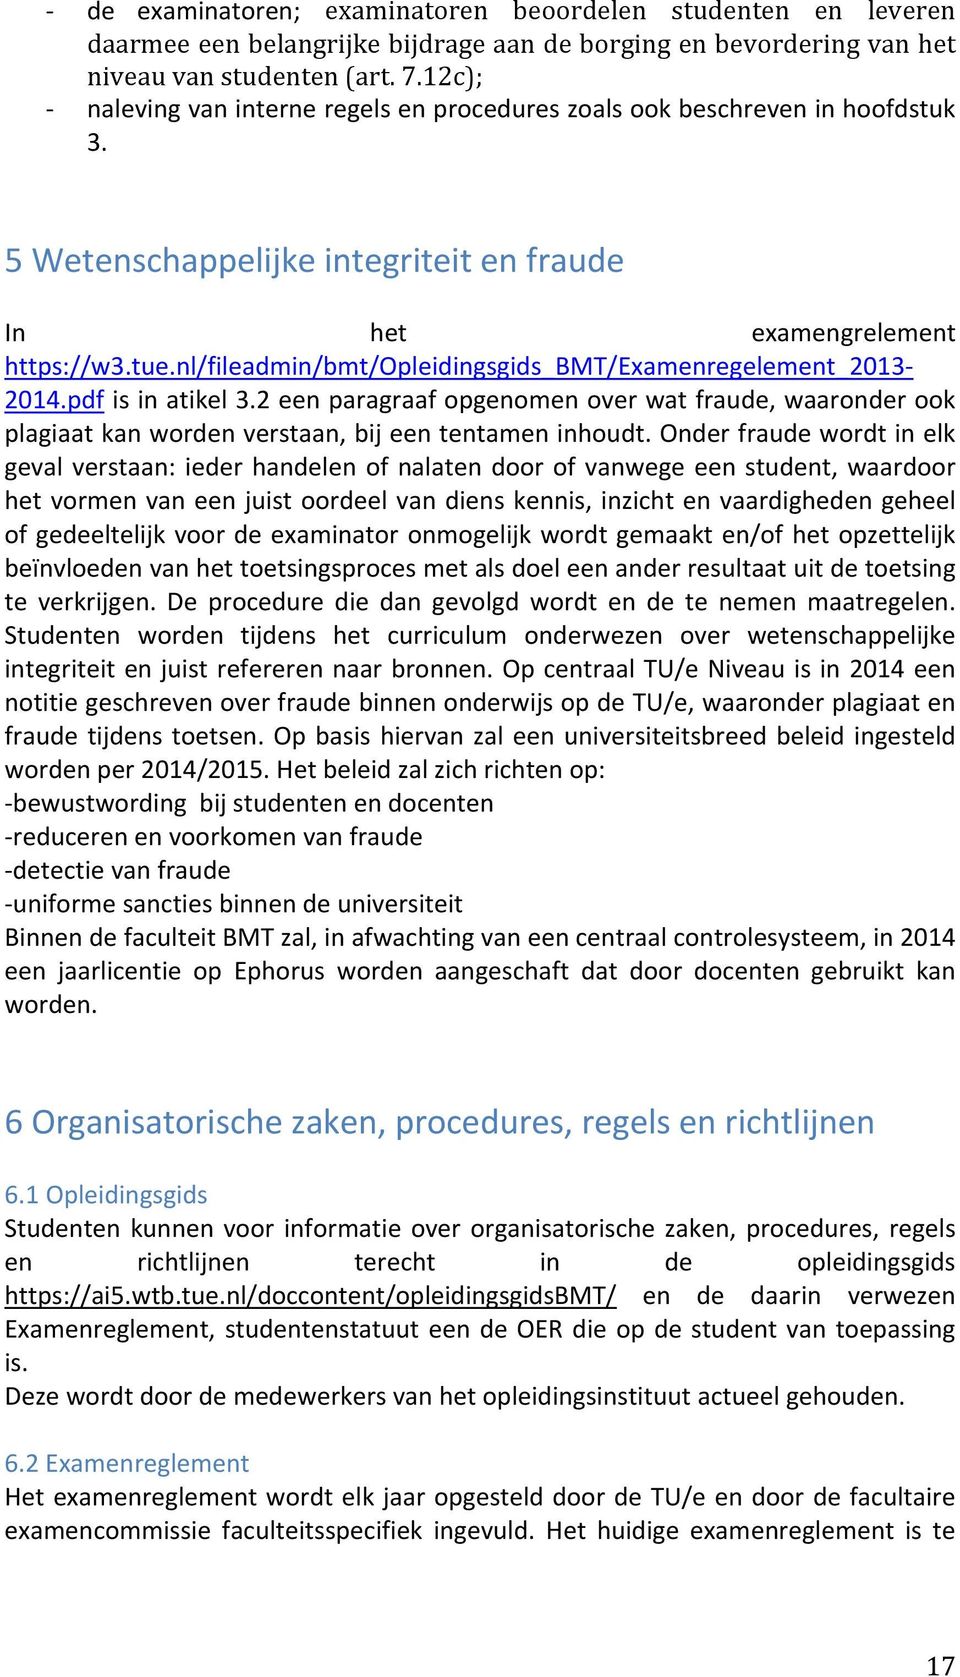 nl/fileadmin/bmt/opleidingsgids_bmt/examenregelement_2013 2014.pdf is in atikel 3.2 een paragraaf opgenomen over wat fraude, waaronder ook plagiaat kan worden verstaan, bij een tentamen inhoudt.